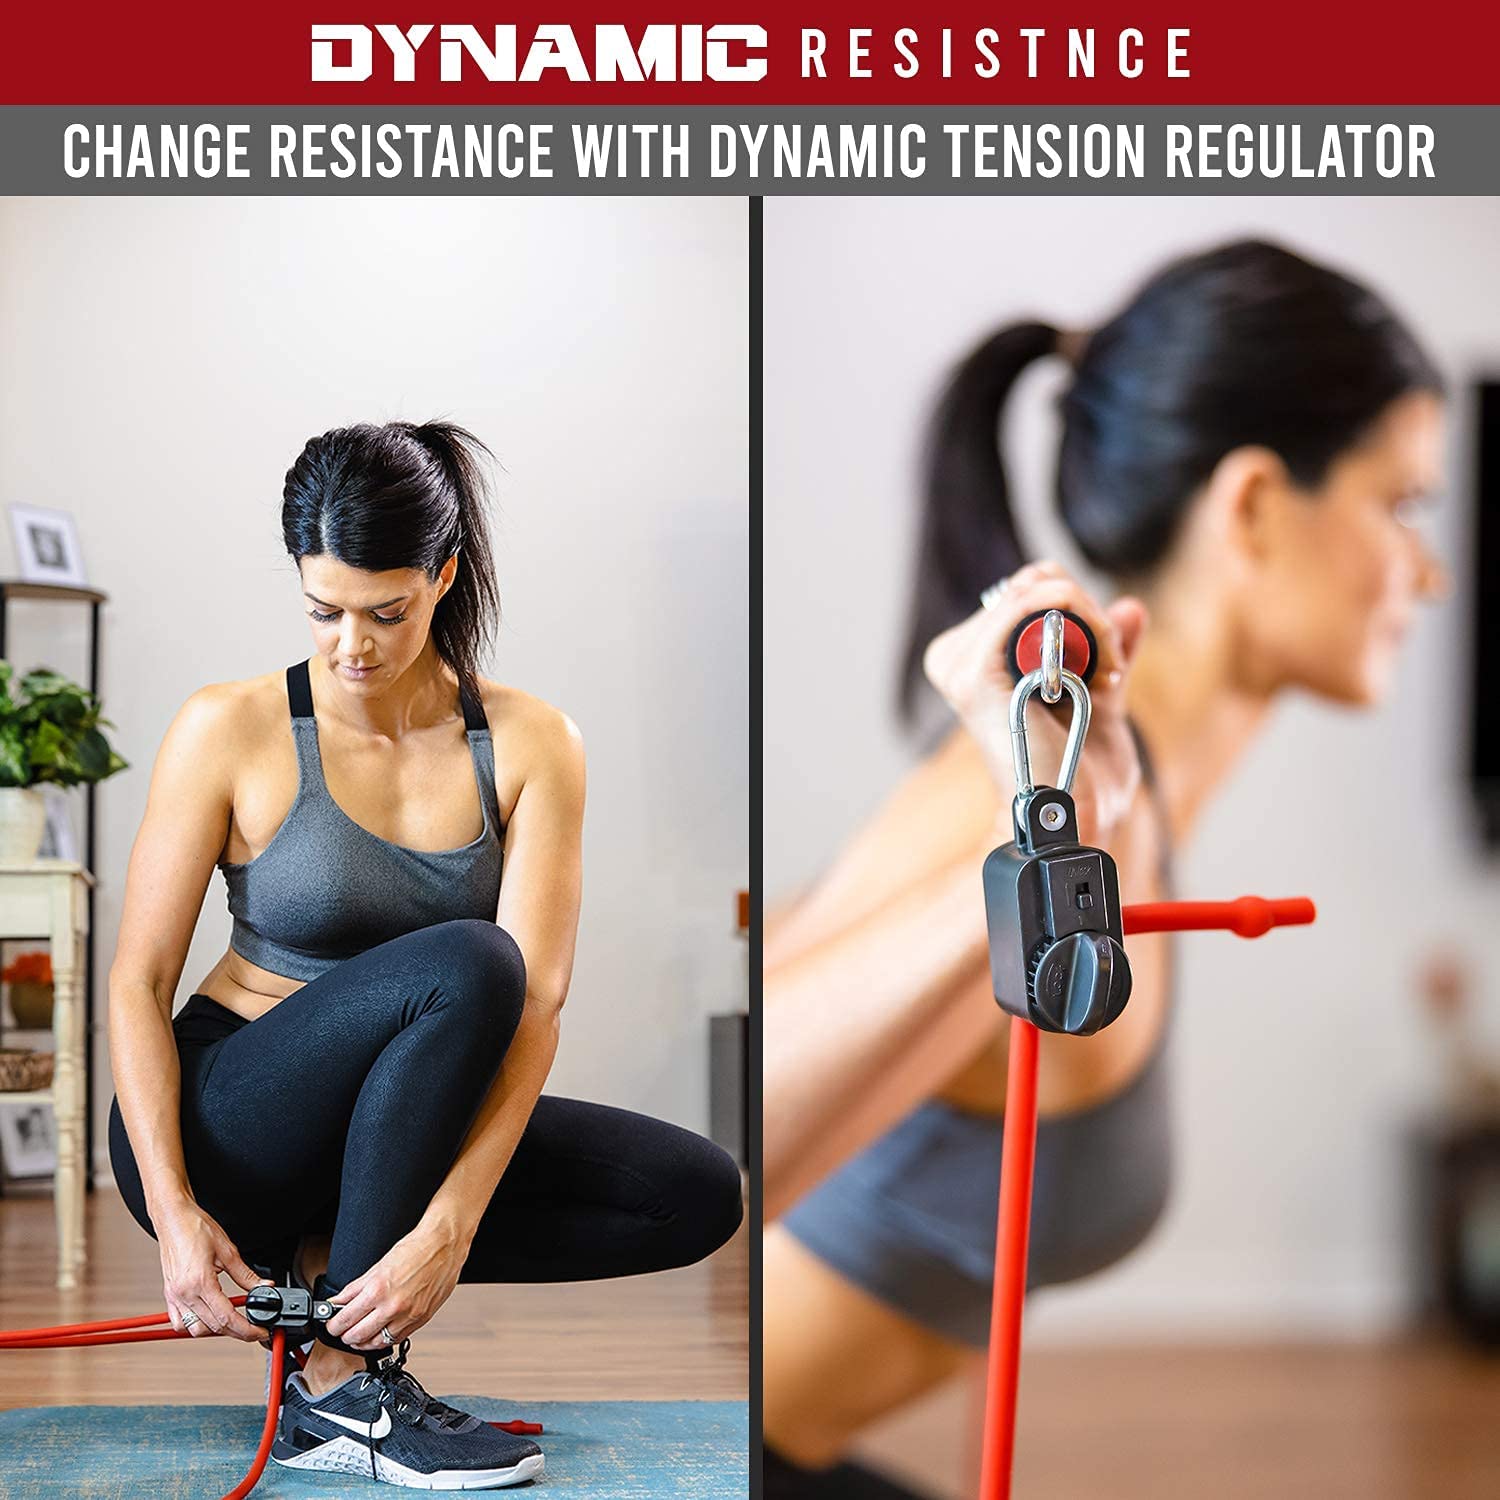 Portable Home Gym – Dynamic Total Body Workout